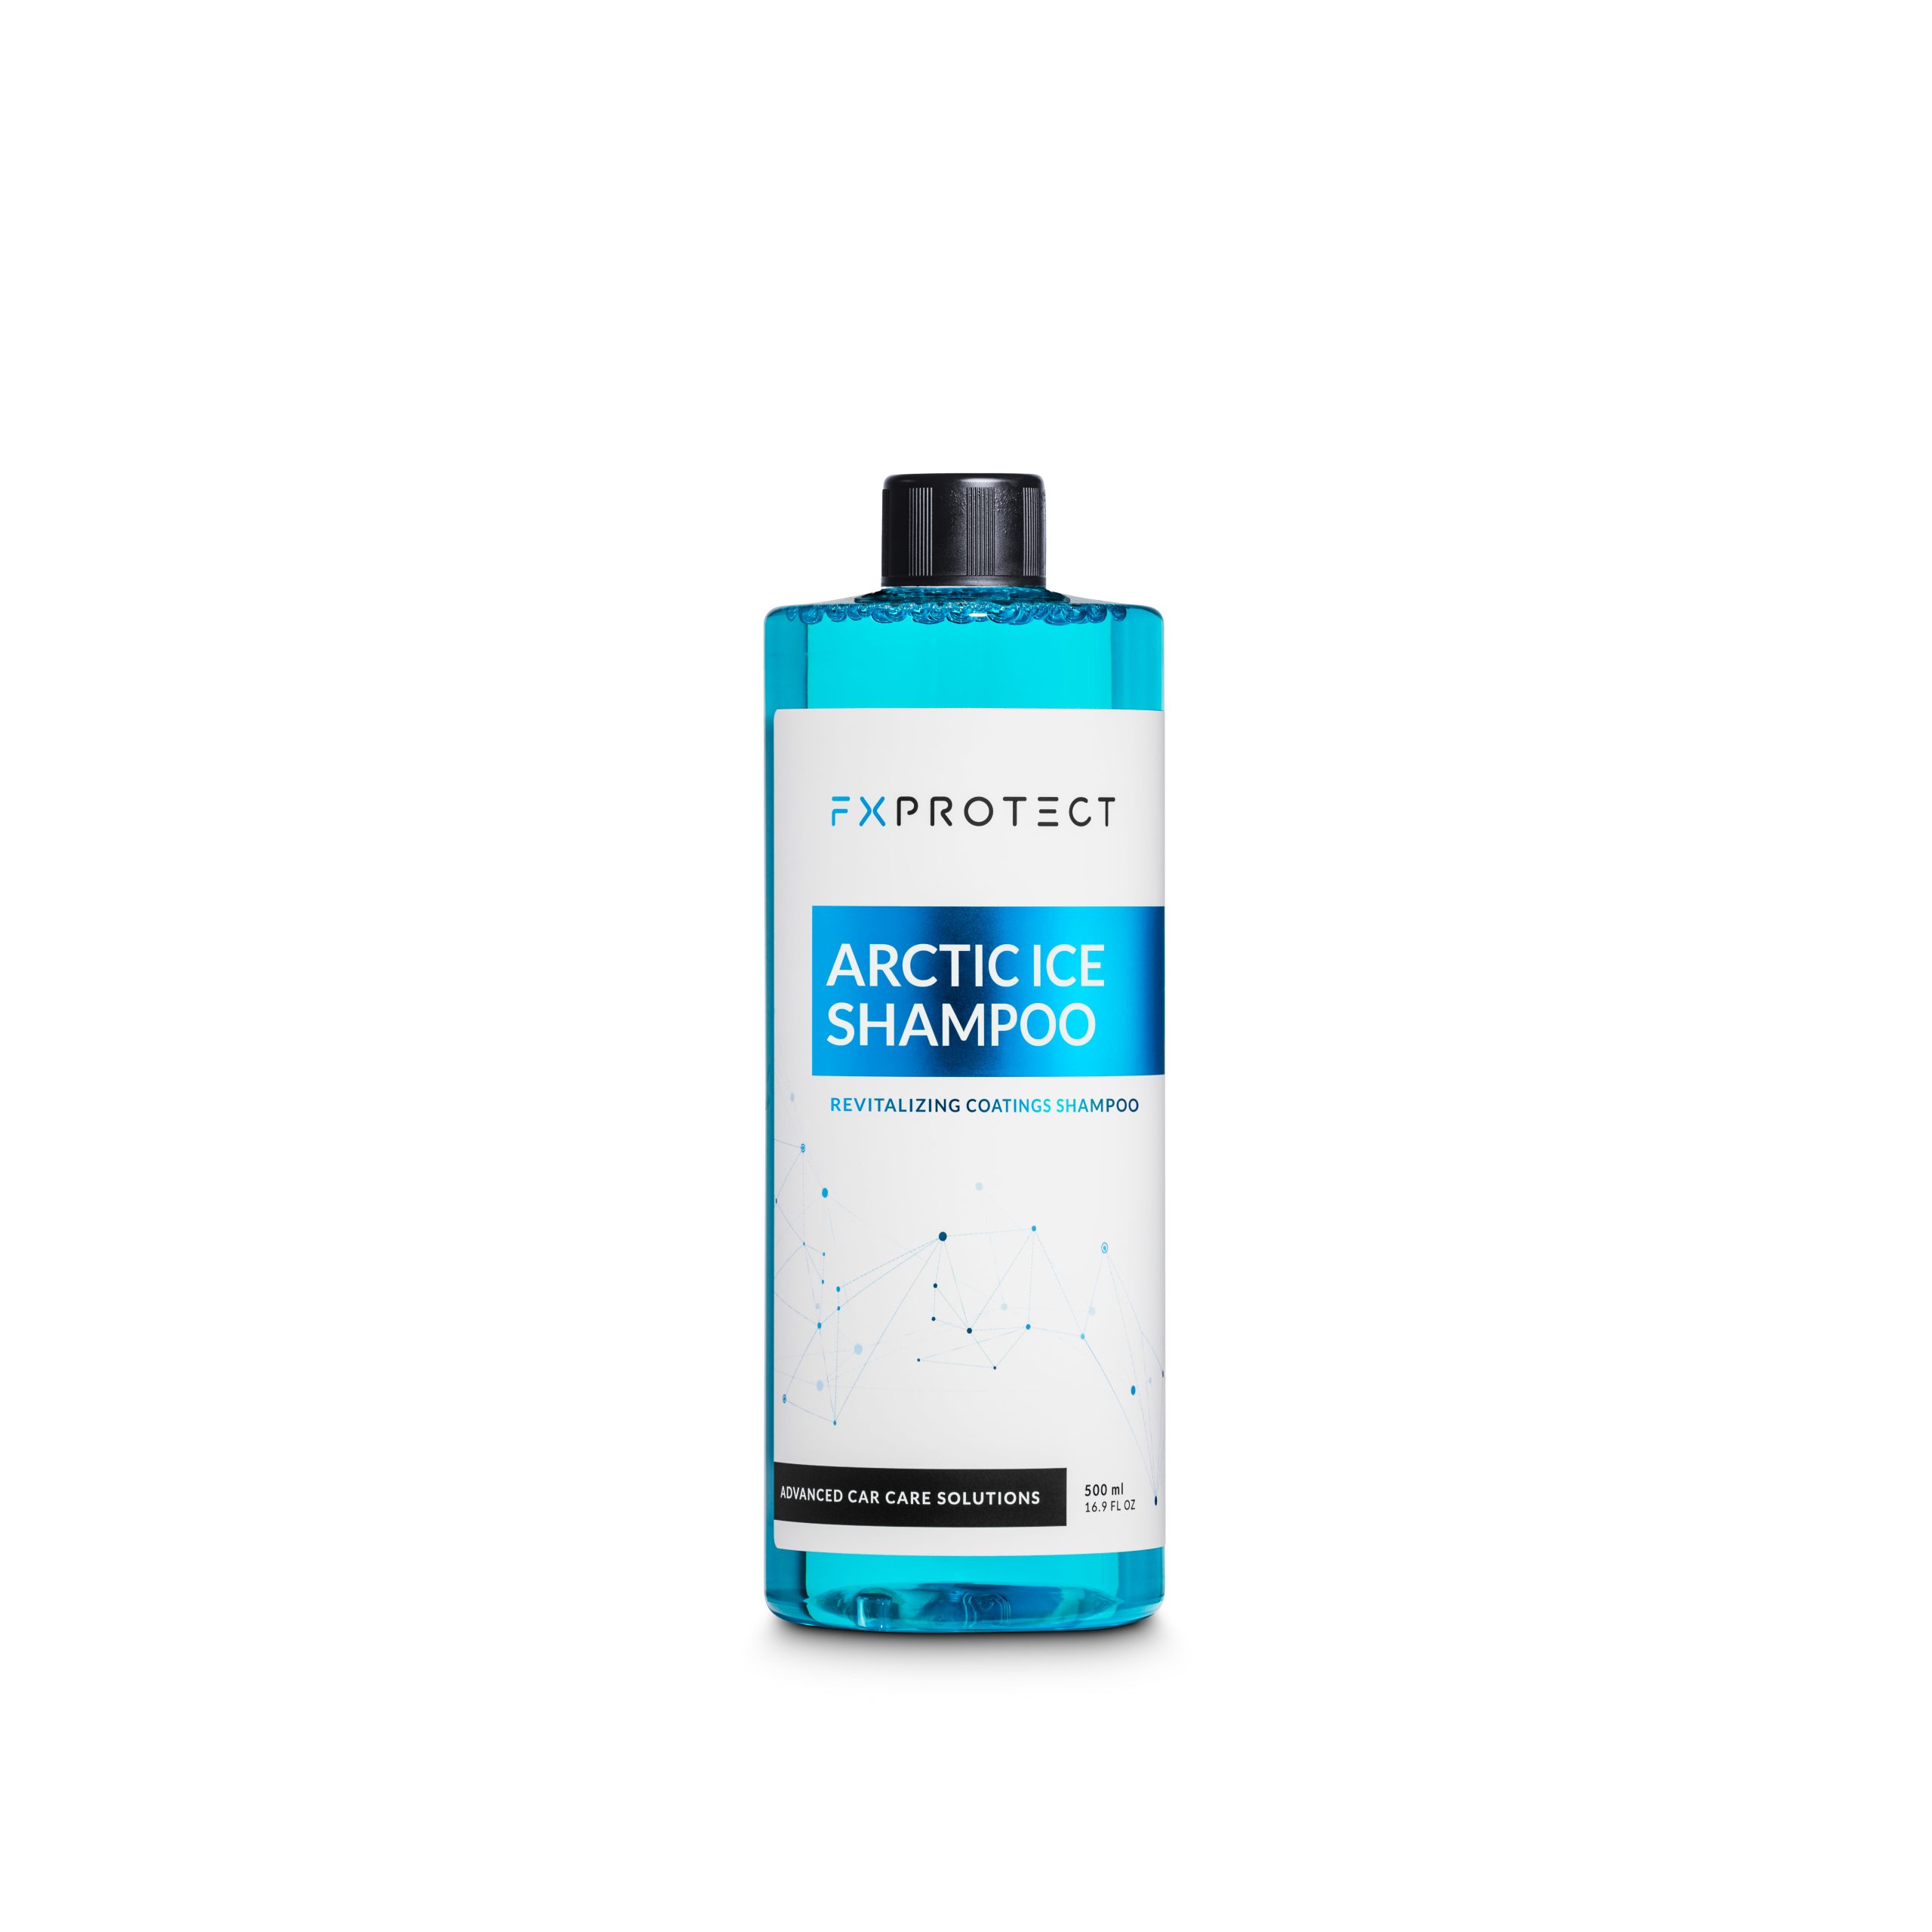 FX Protect Arctic Ice Shampoo kiseli šampon primarno služi za pranje vozila zaštićenih keramičkim premazima ili drugim vrstama zaštite.